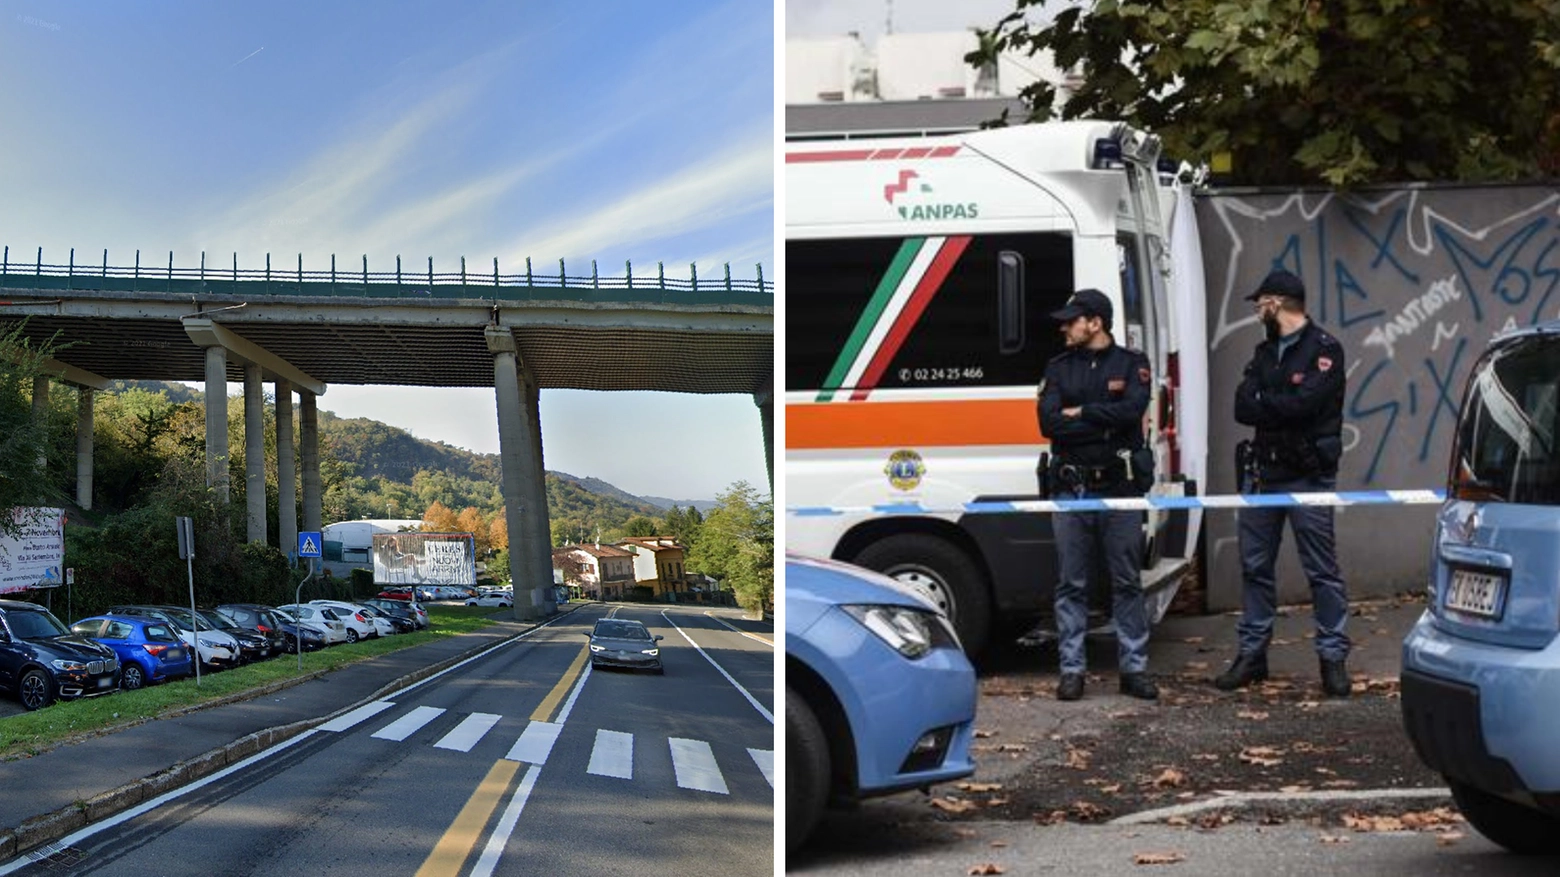 La donna aveva 51 anni, all’arrivo dei soccorsi era già deceduta. Il corpo è stato rinvenuto in via Bellinzona, proprio sotto un cavalcavia autostradale